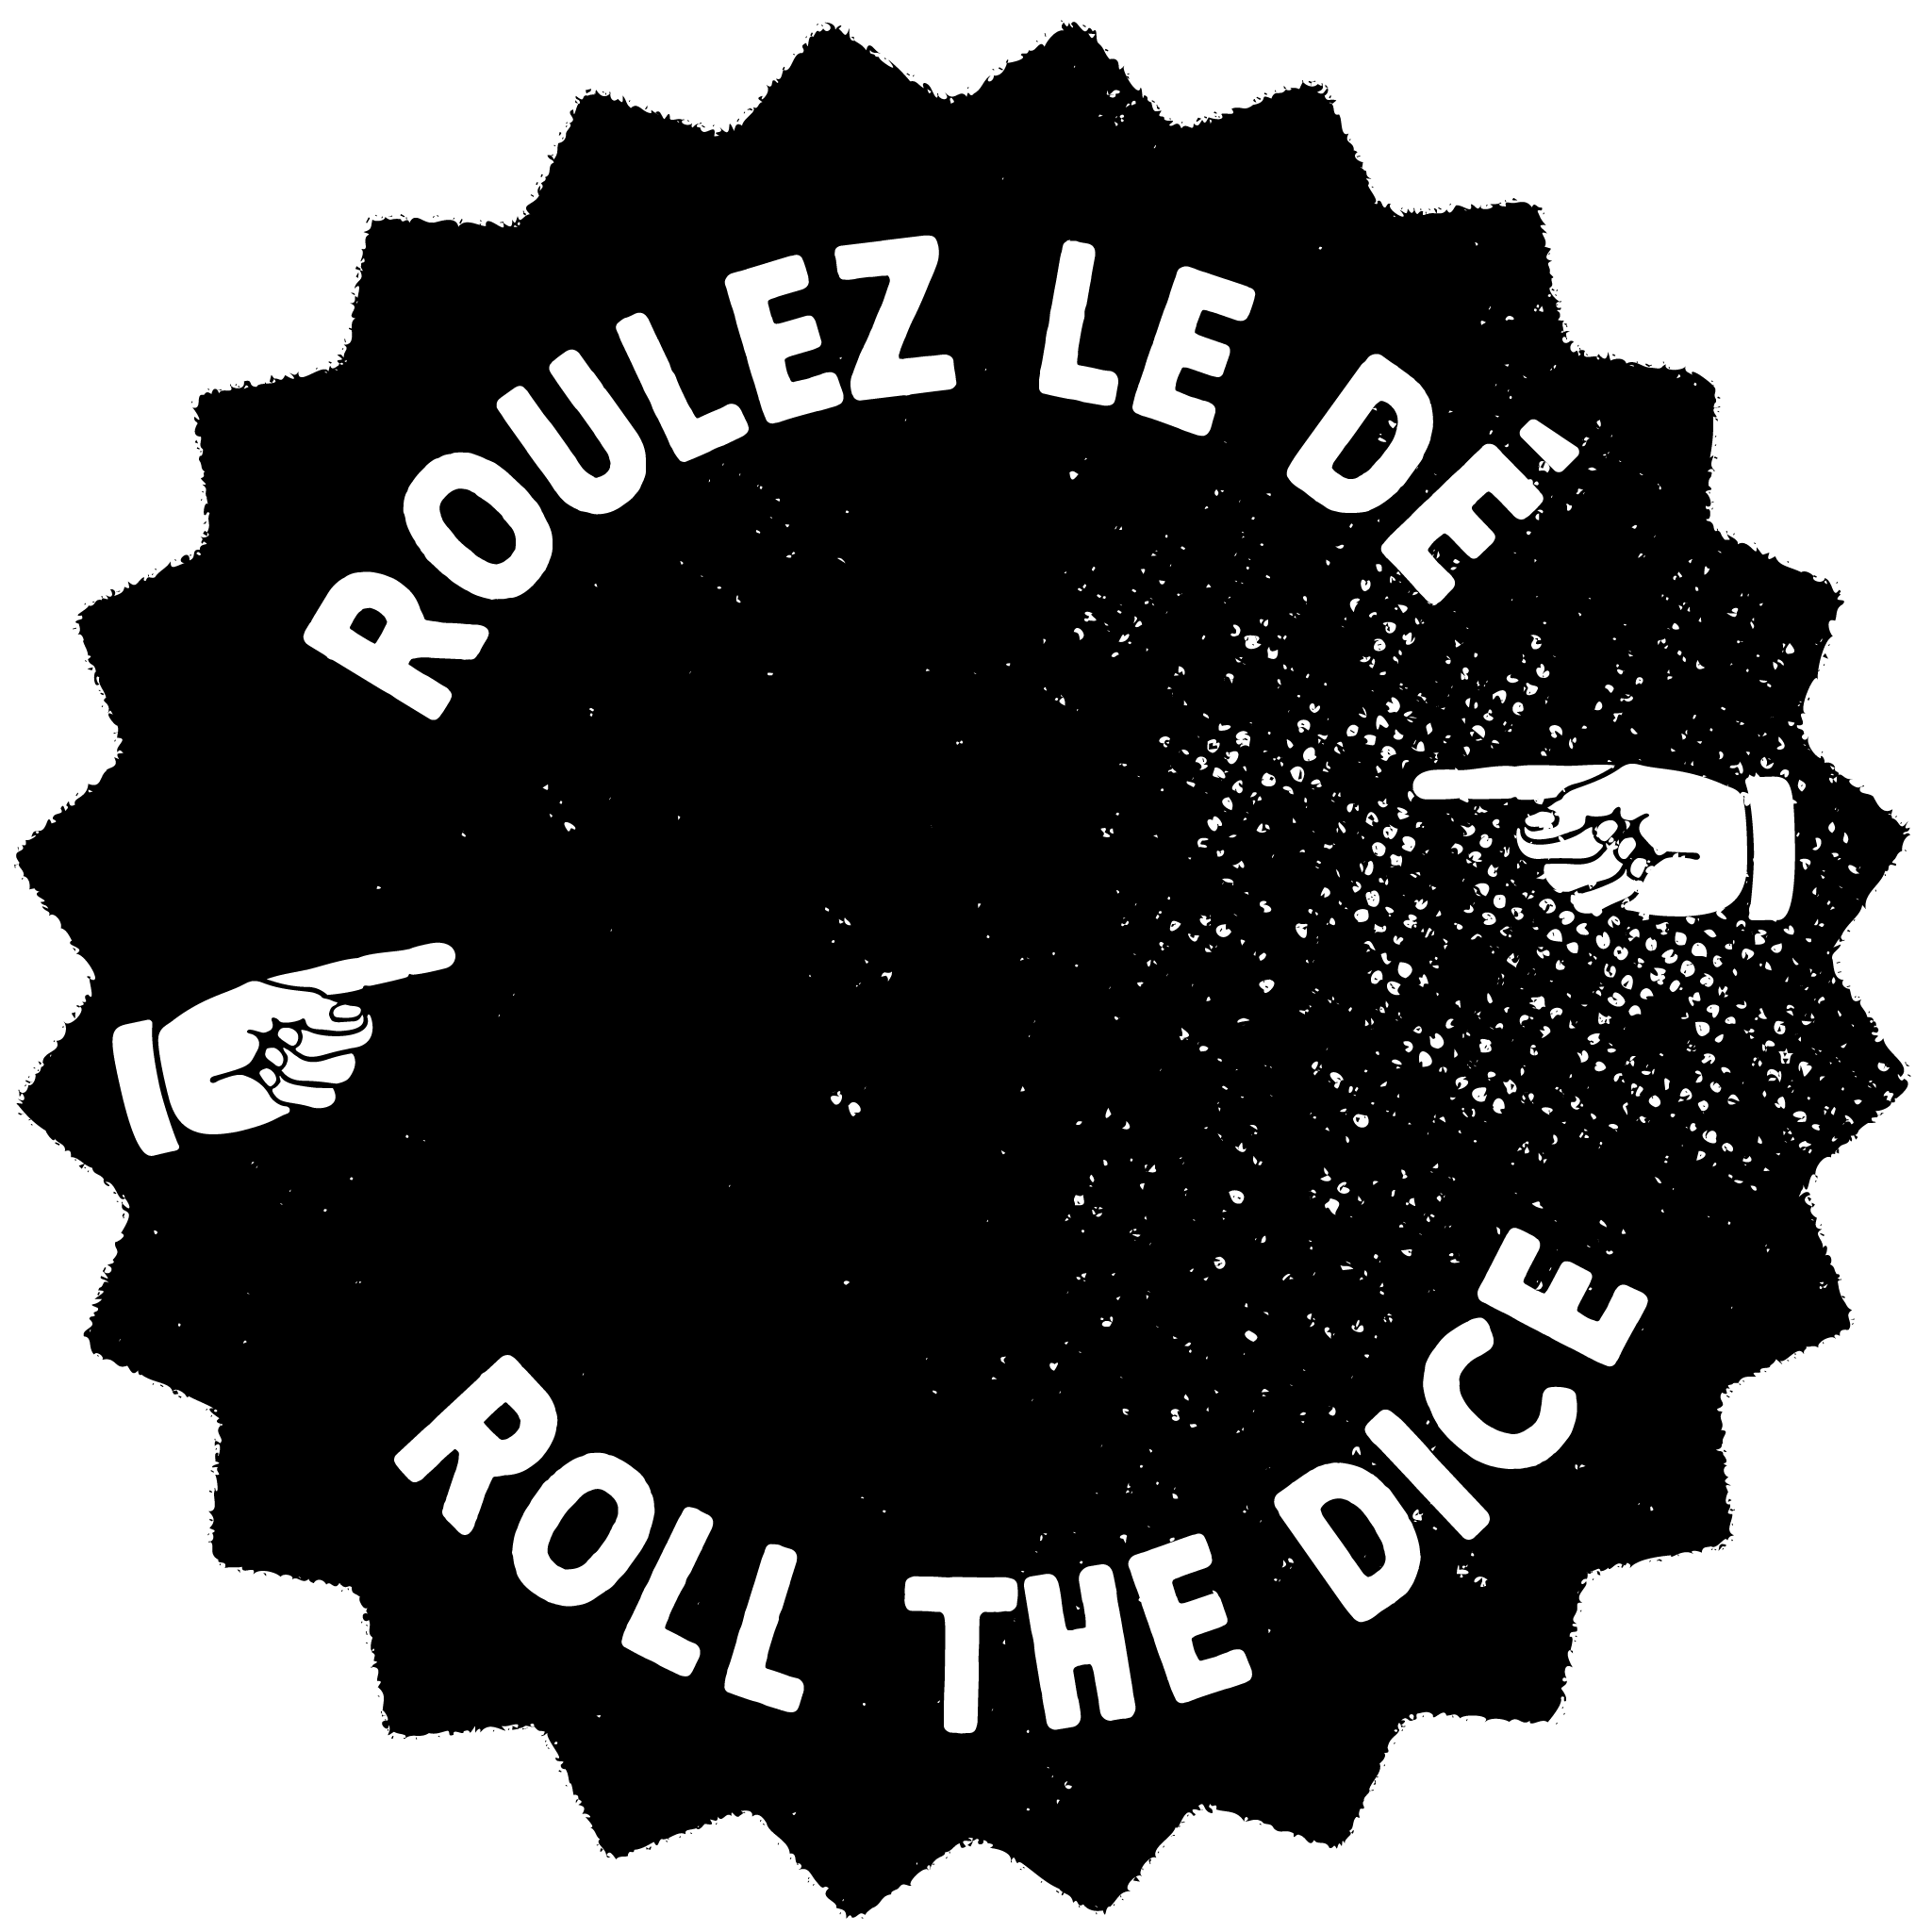 Roulez le dé! Roll the dice!